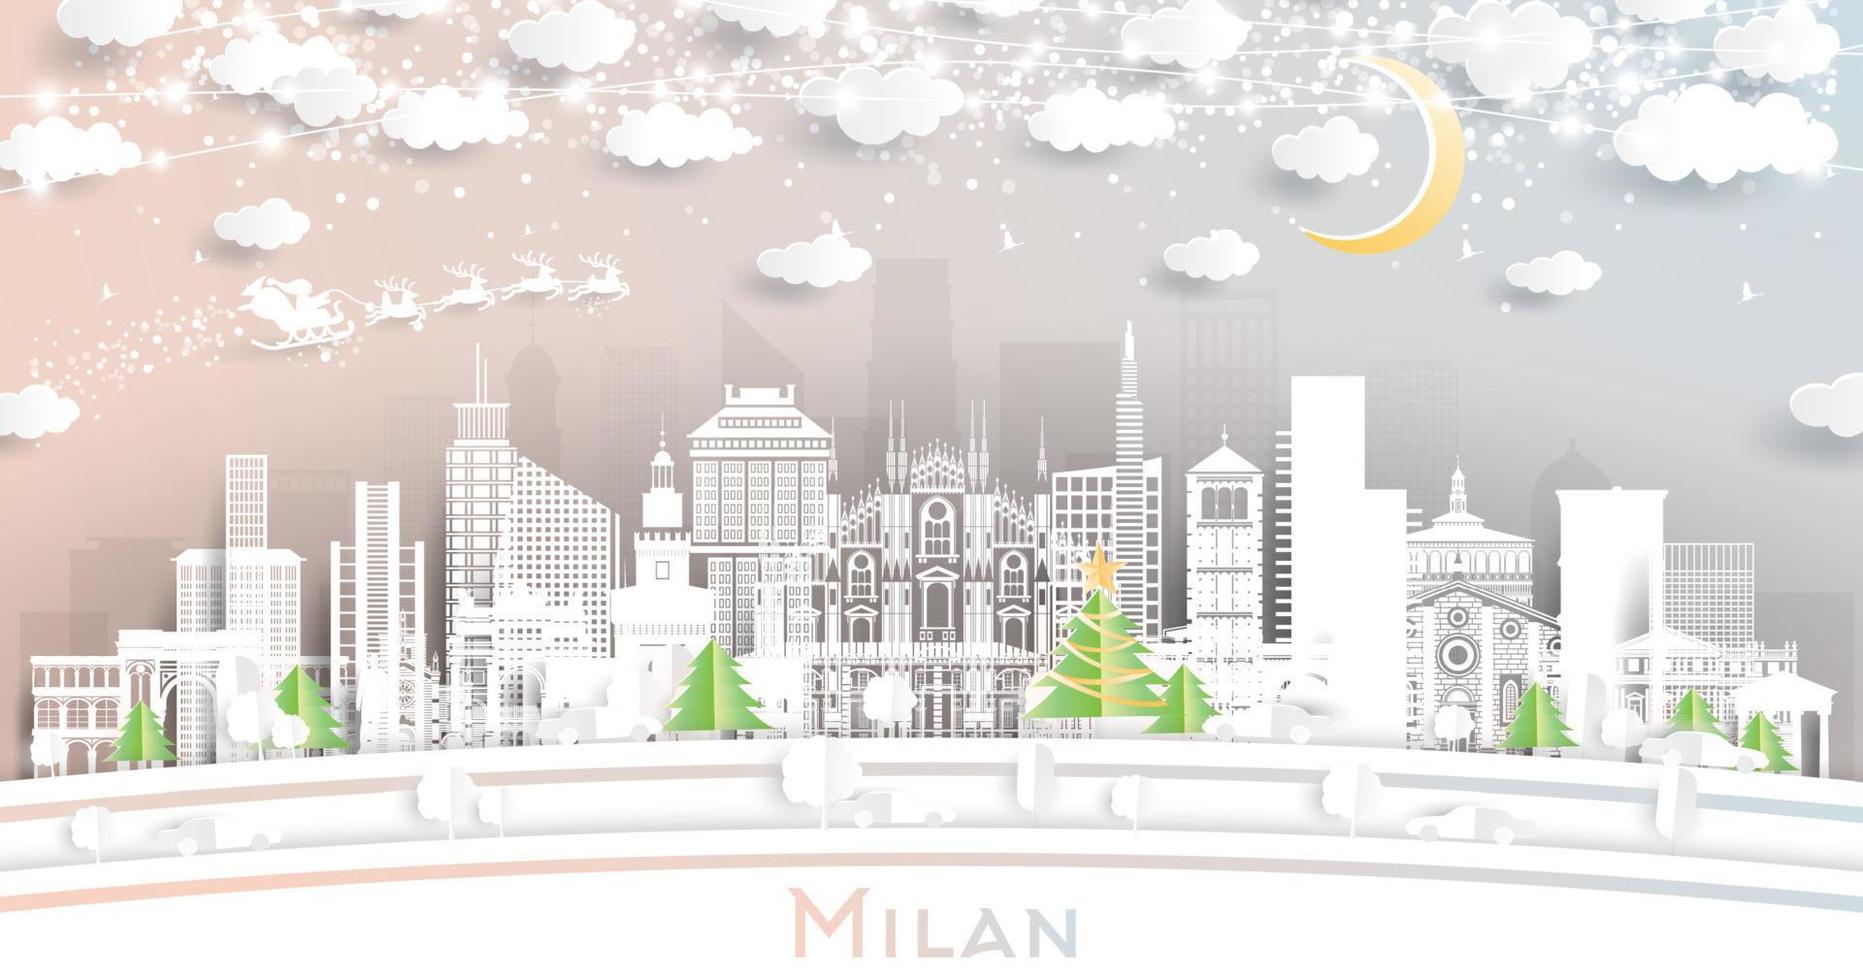 milan Italien stad horisont i papper skära stil med snöflingor, måne och neon krans. vektor